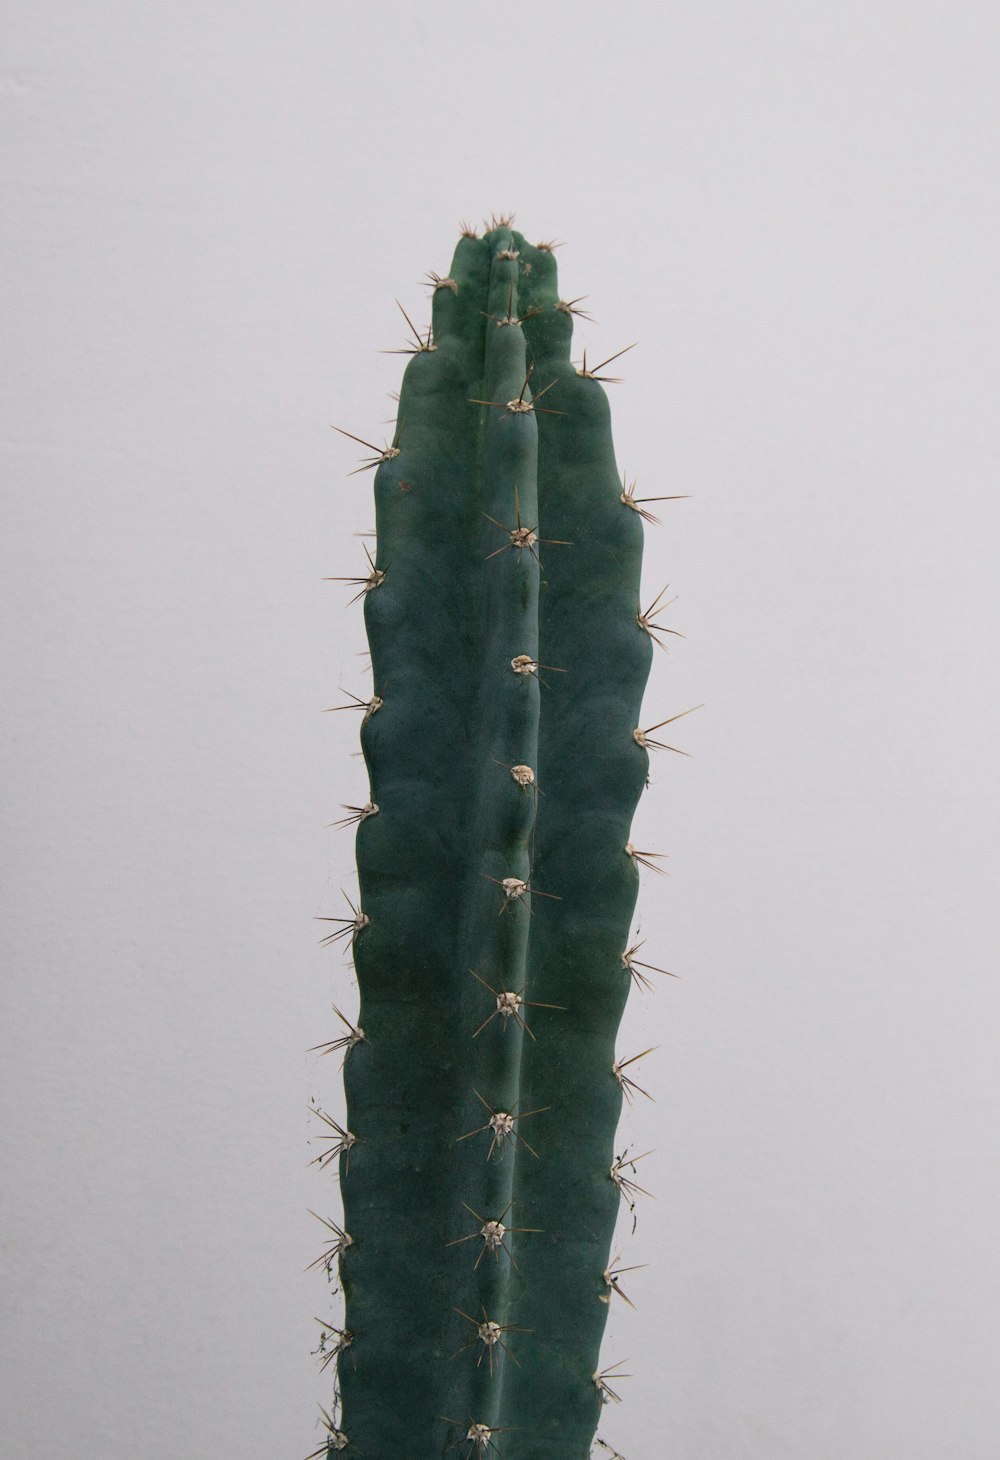 Planta de cactus verde junto a la pared blanca